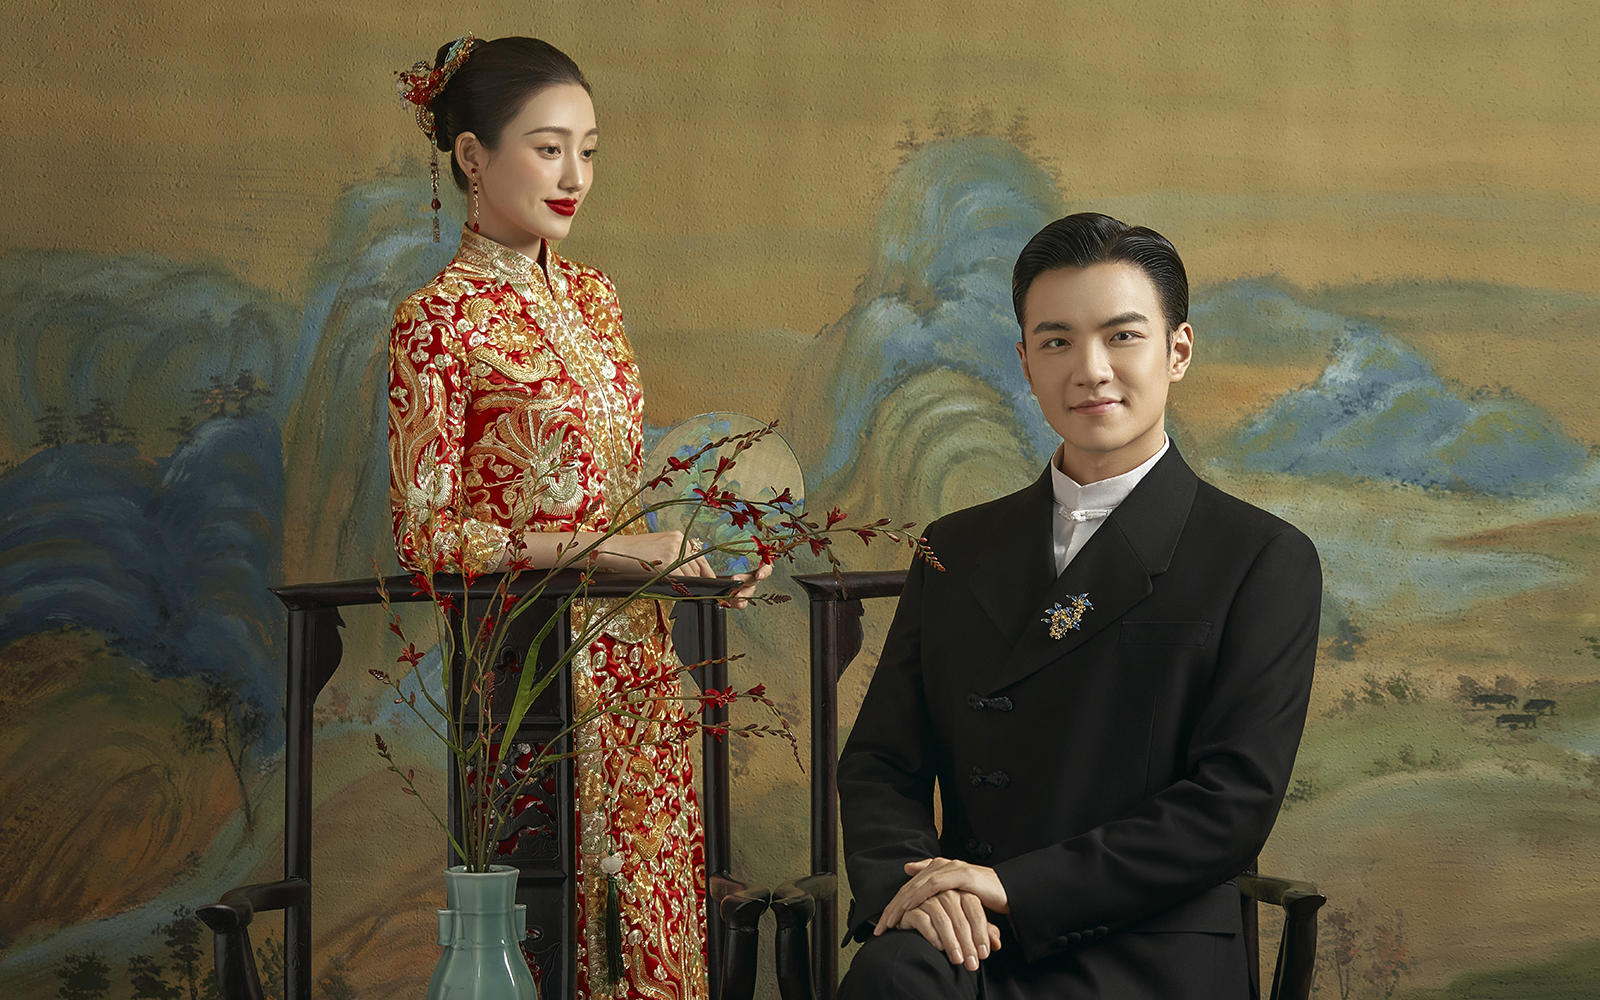 内景 l 沉迷于东方美学🏮一眼惊艳的新中式婚纱